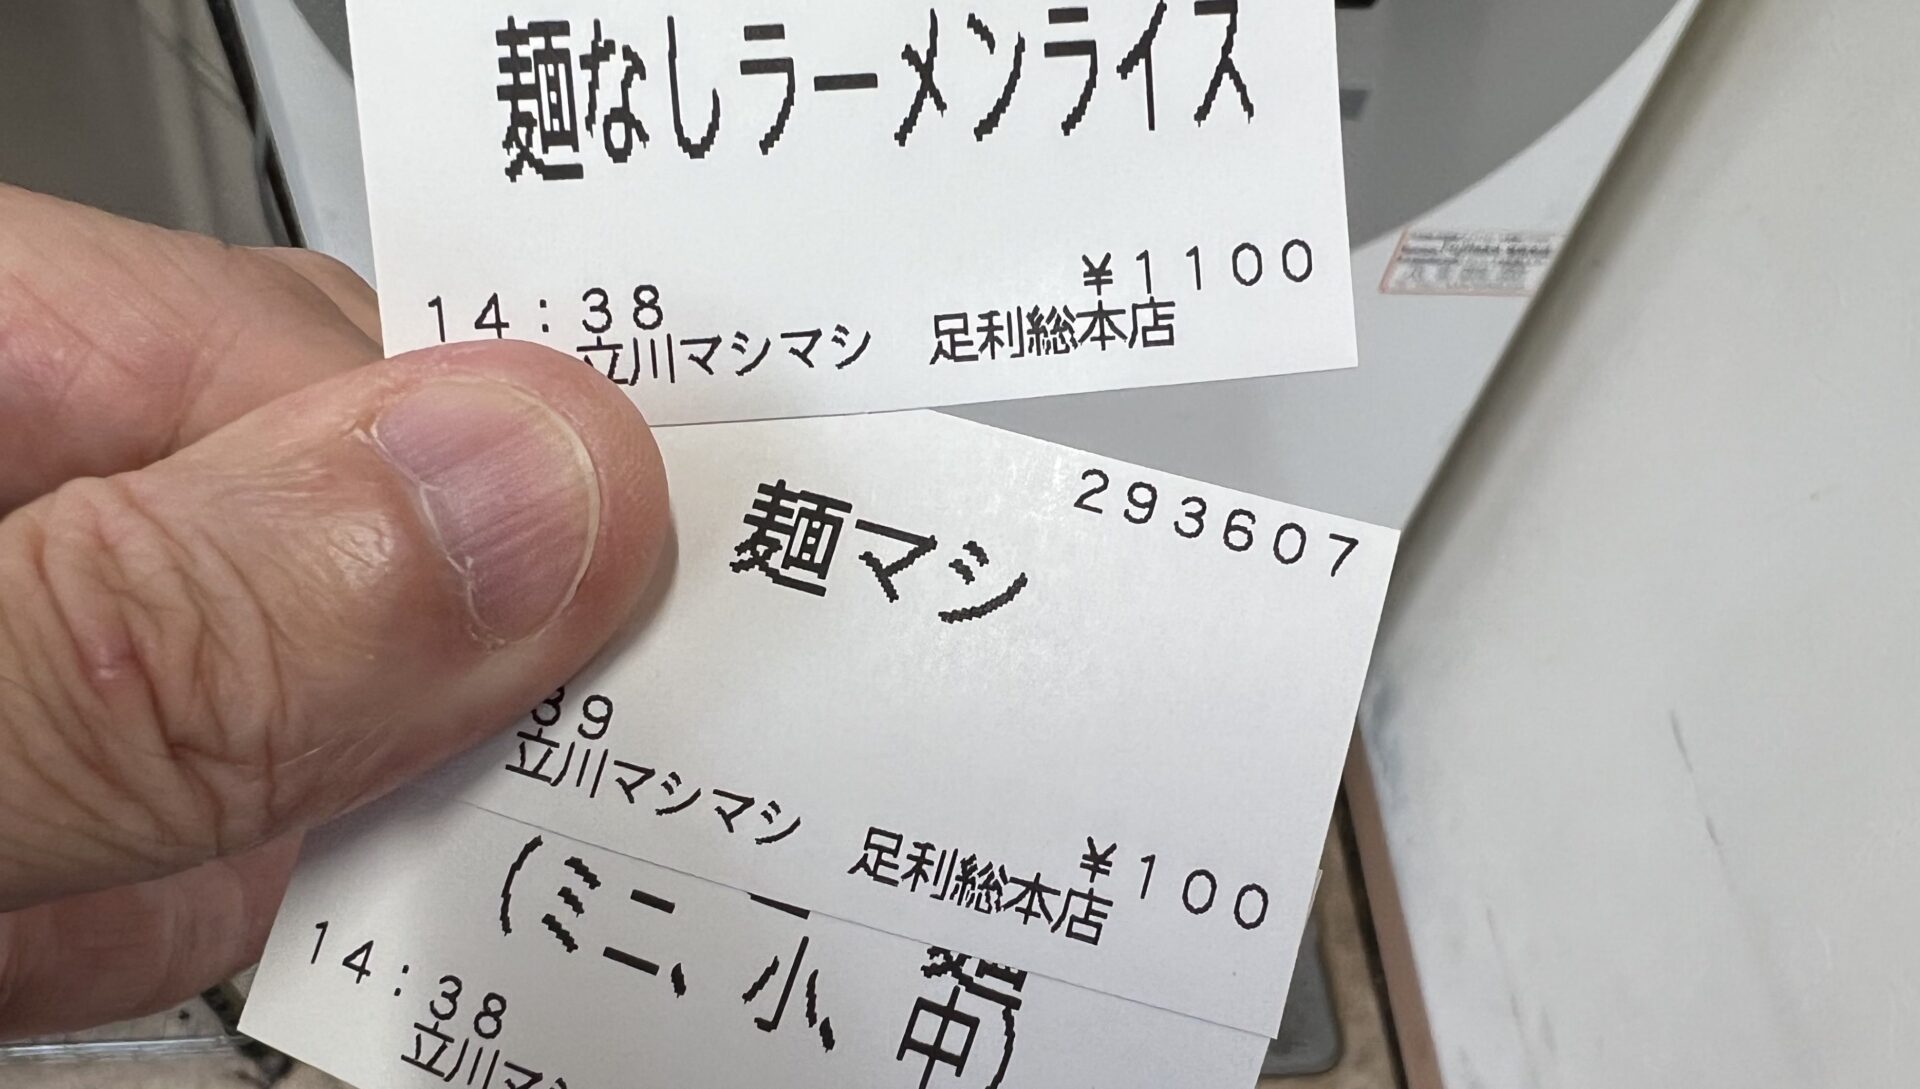 立川マシマシ足利総本店麺なしラーメンライスすごいみそラーメンなど食券